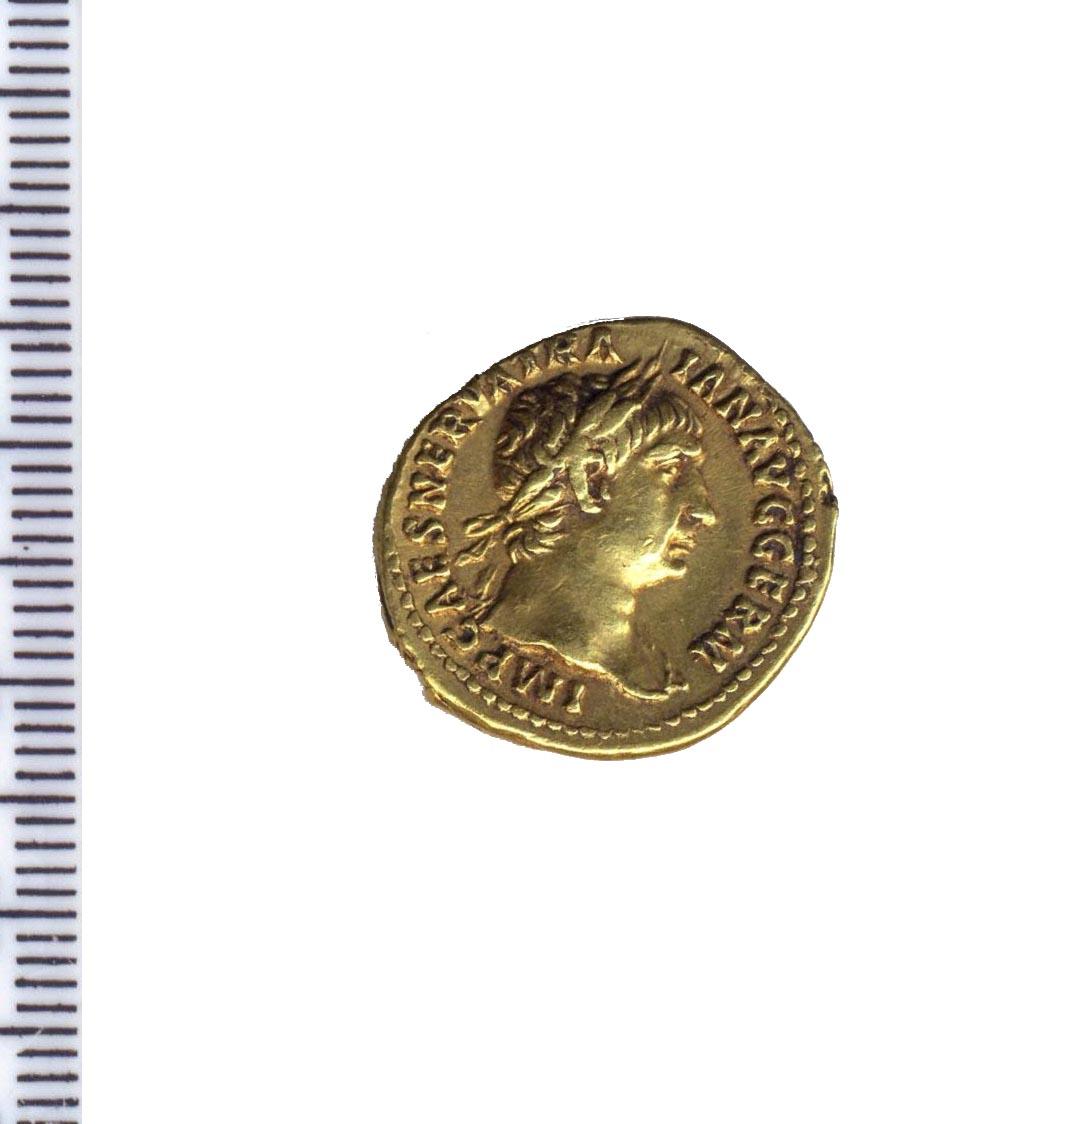 moneta - aureo - produzione romana imperiale (sec. II d.C)